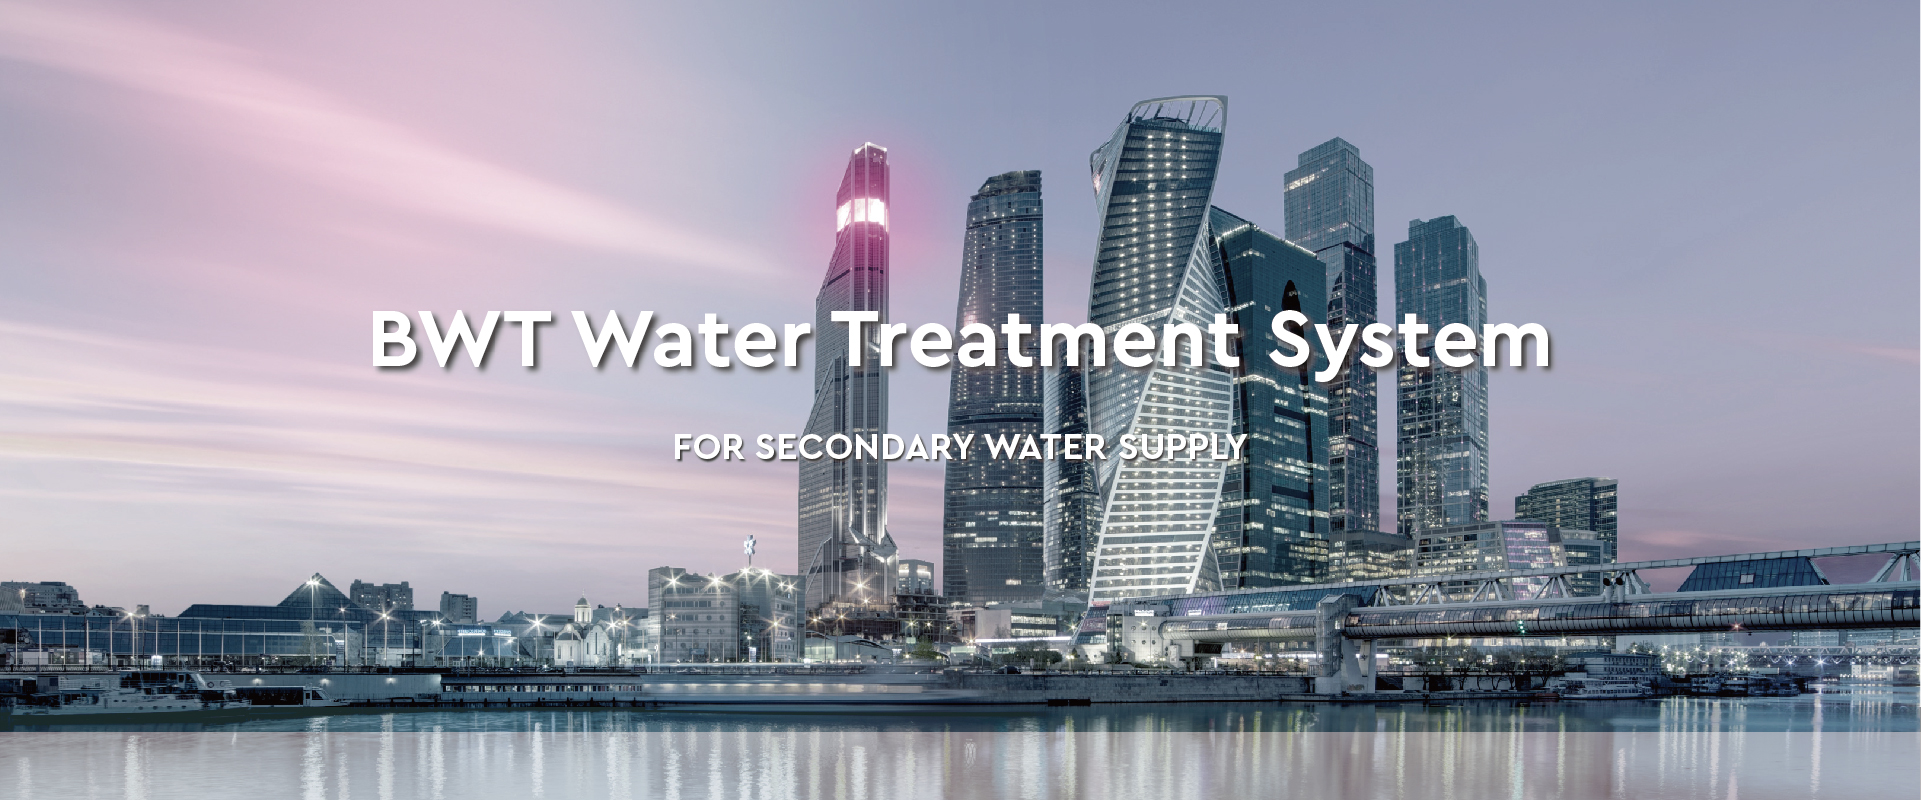 二次供水处理系统与高层建筑供水